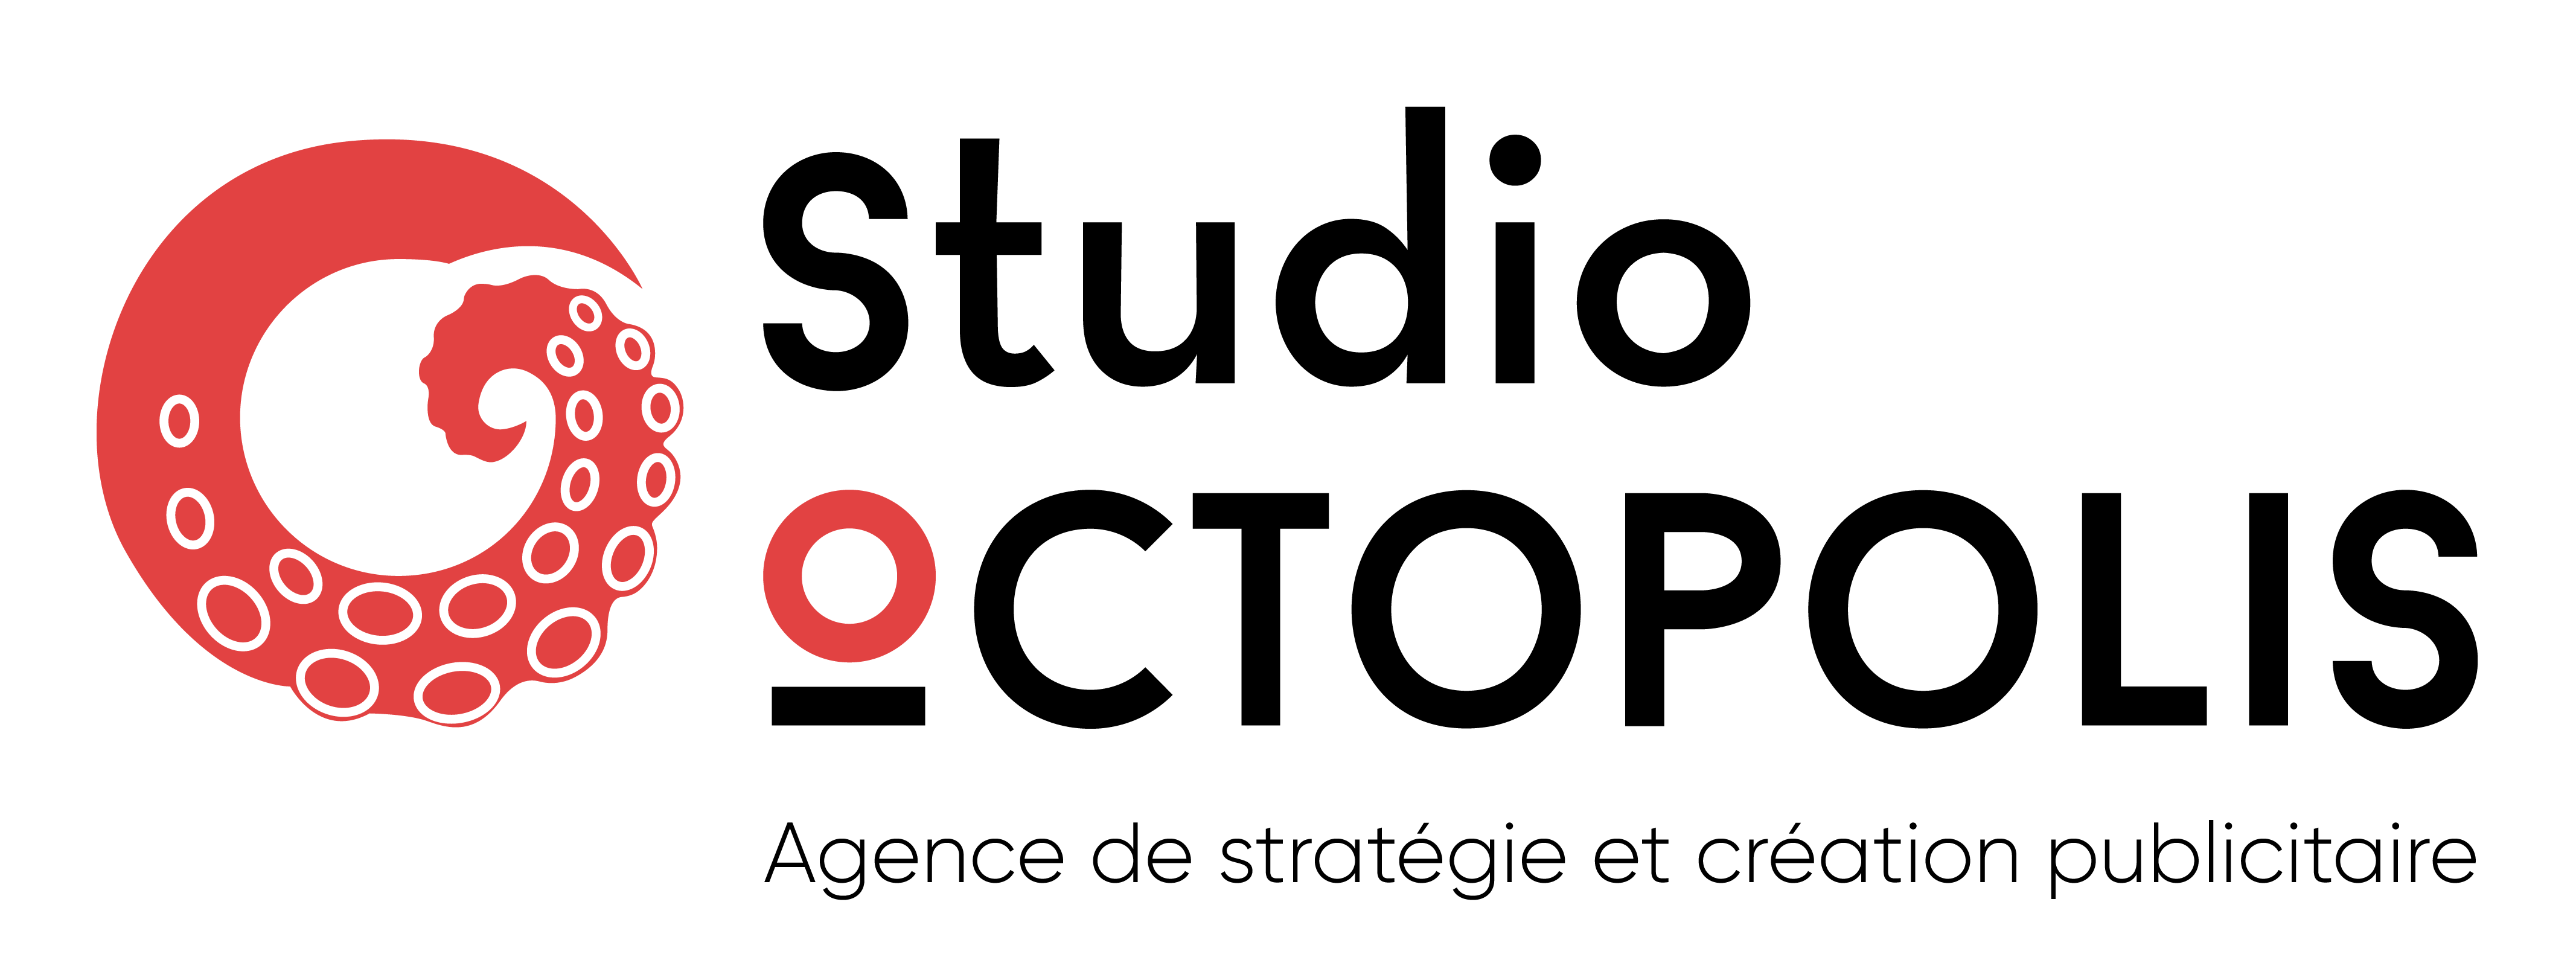 Studio Octopolis logo